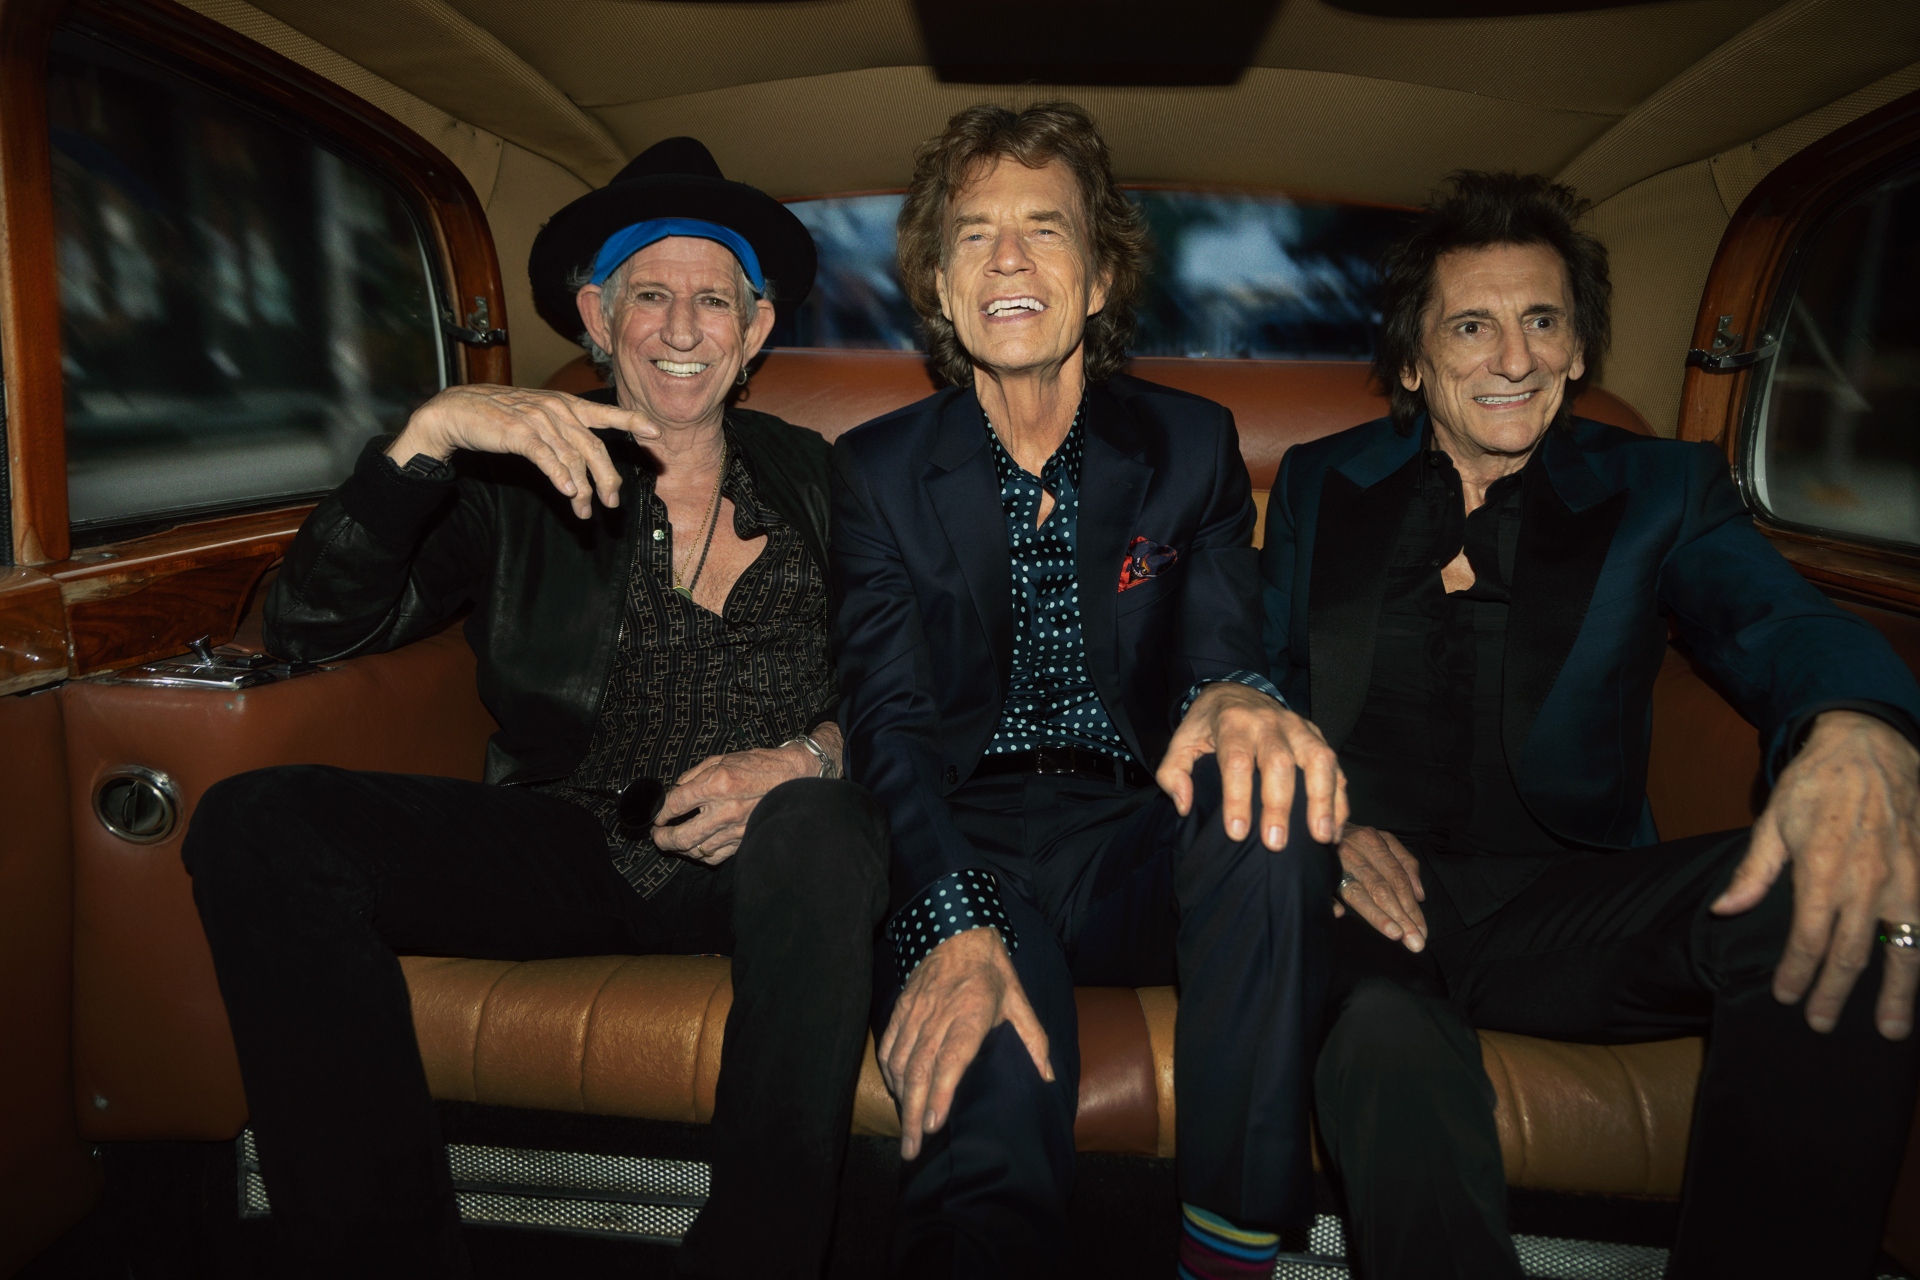 Νέο άλμπουμ για τους Rolling Stones έπειτα από 18 χρόνια